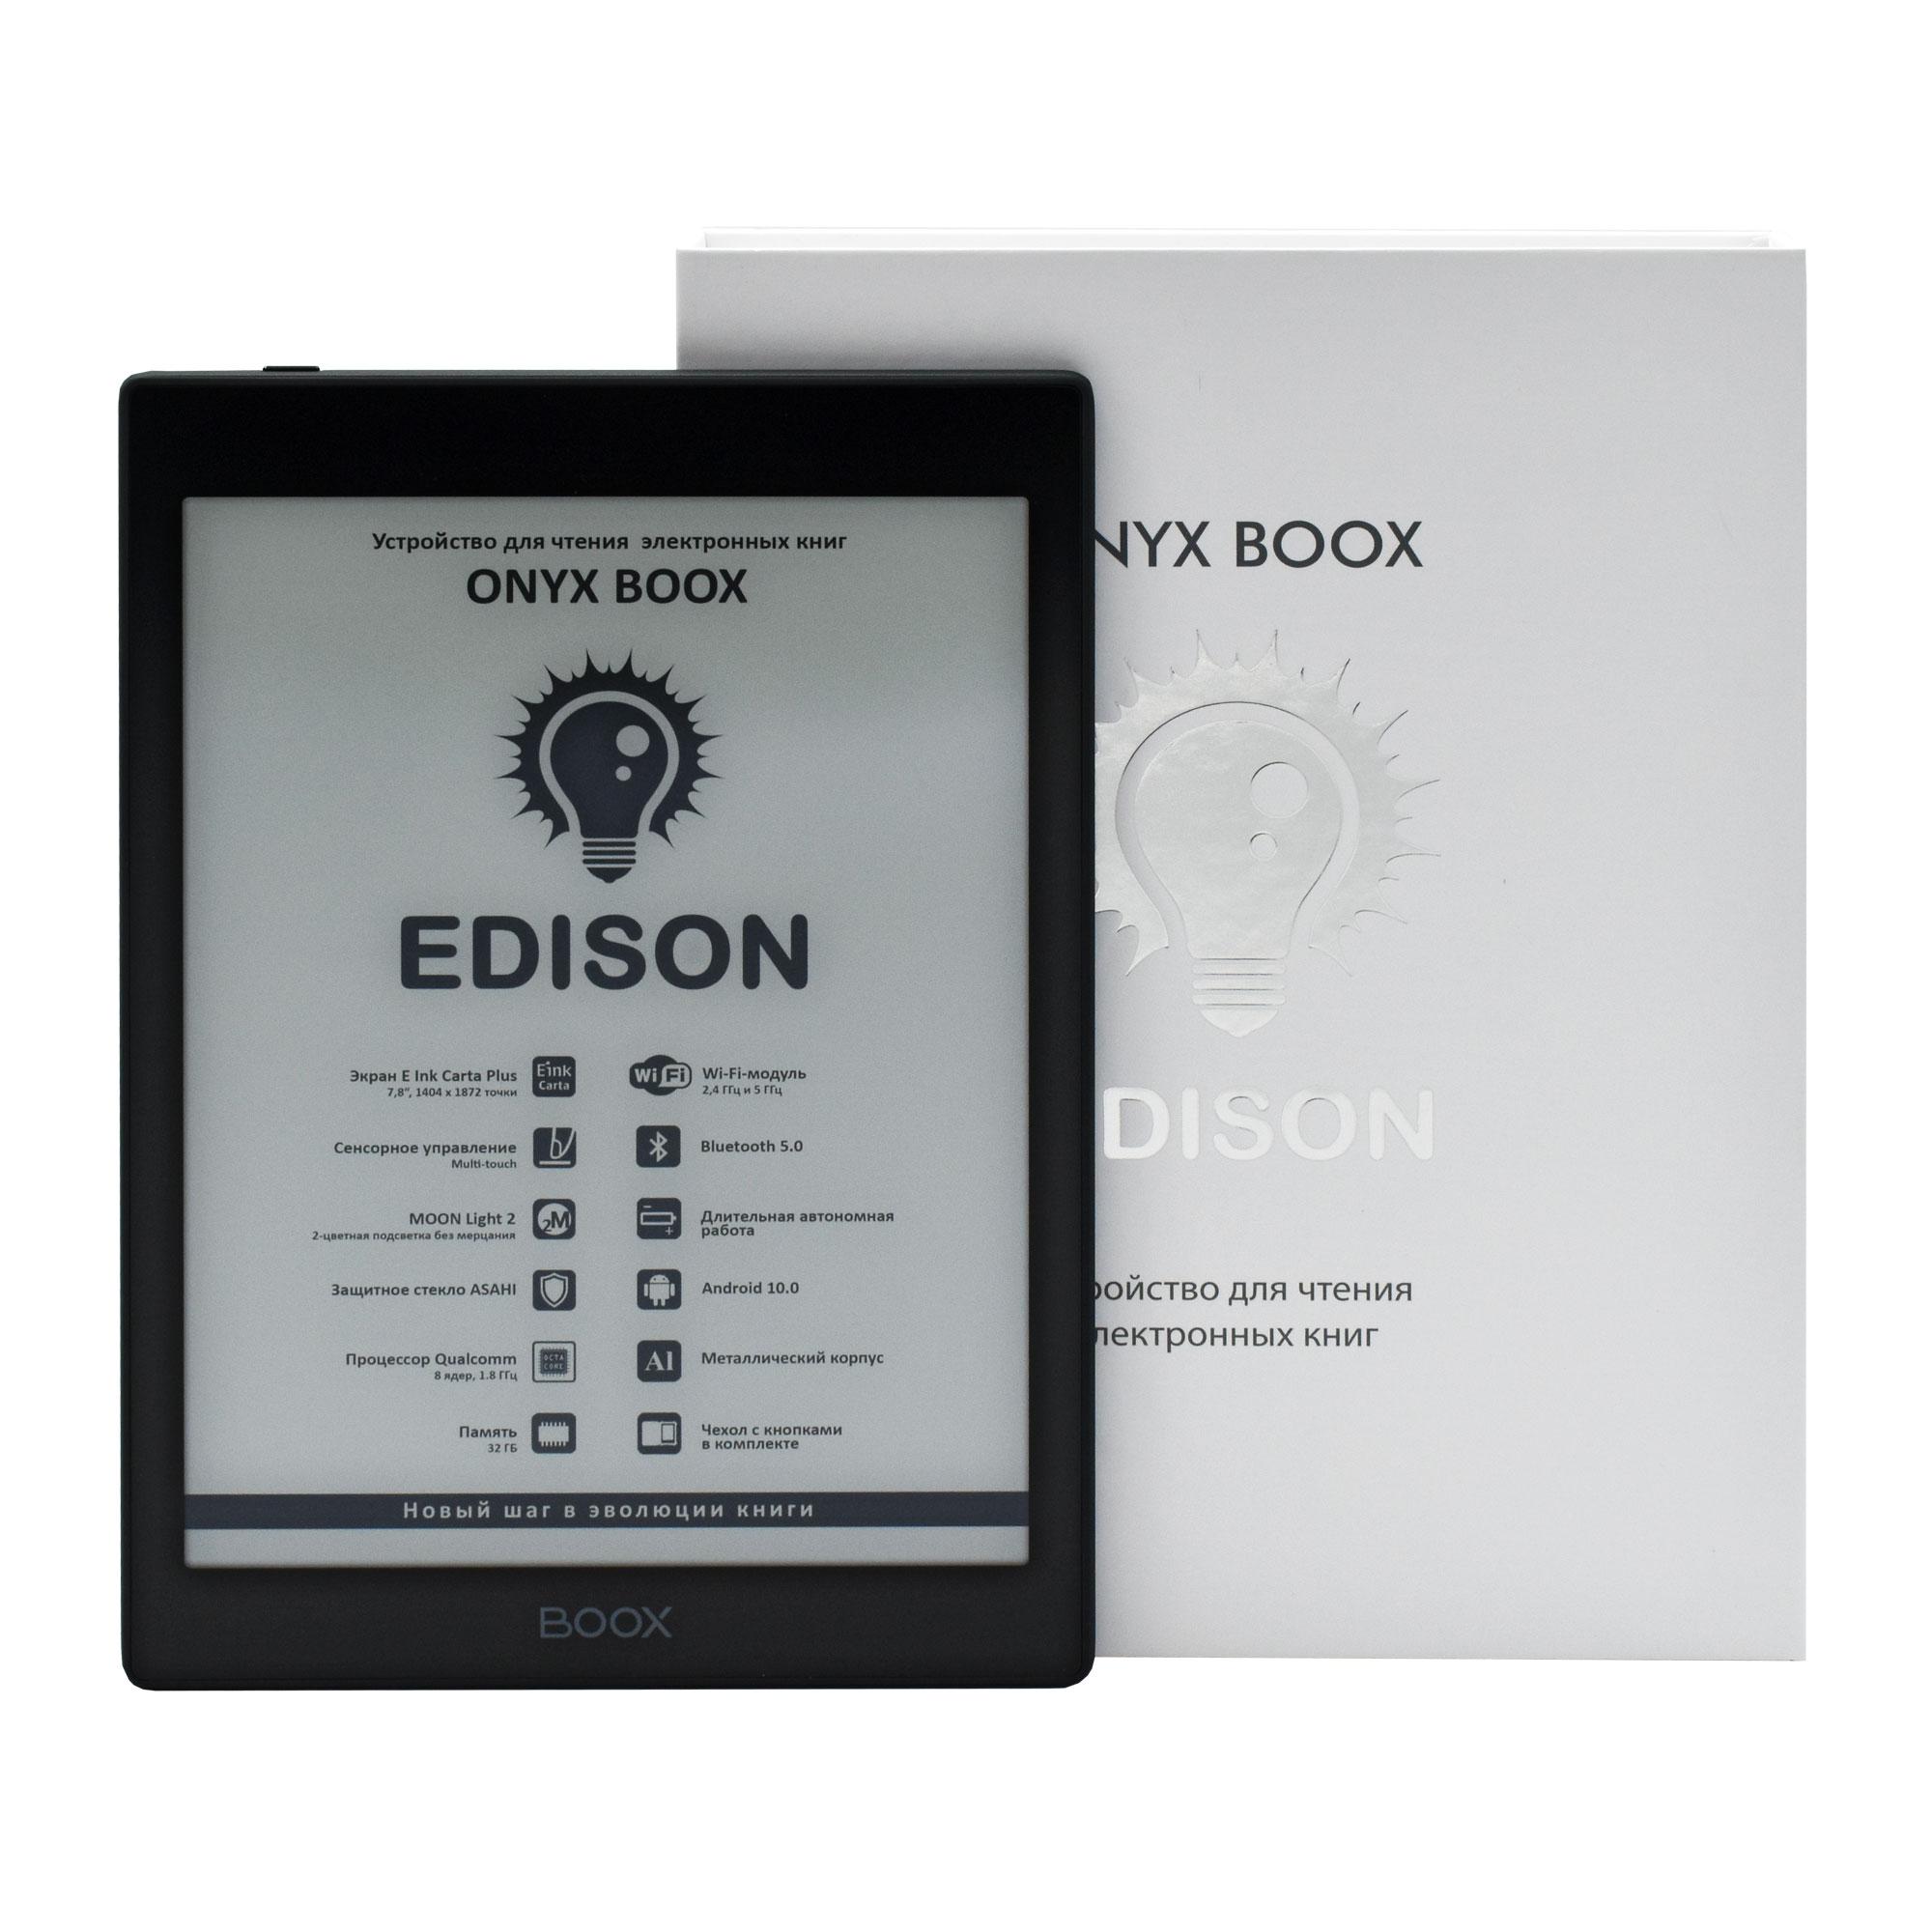 ONYX BOOX Edison – оптимальный выбор для чтения и работы